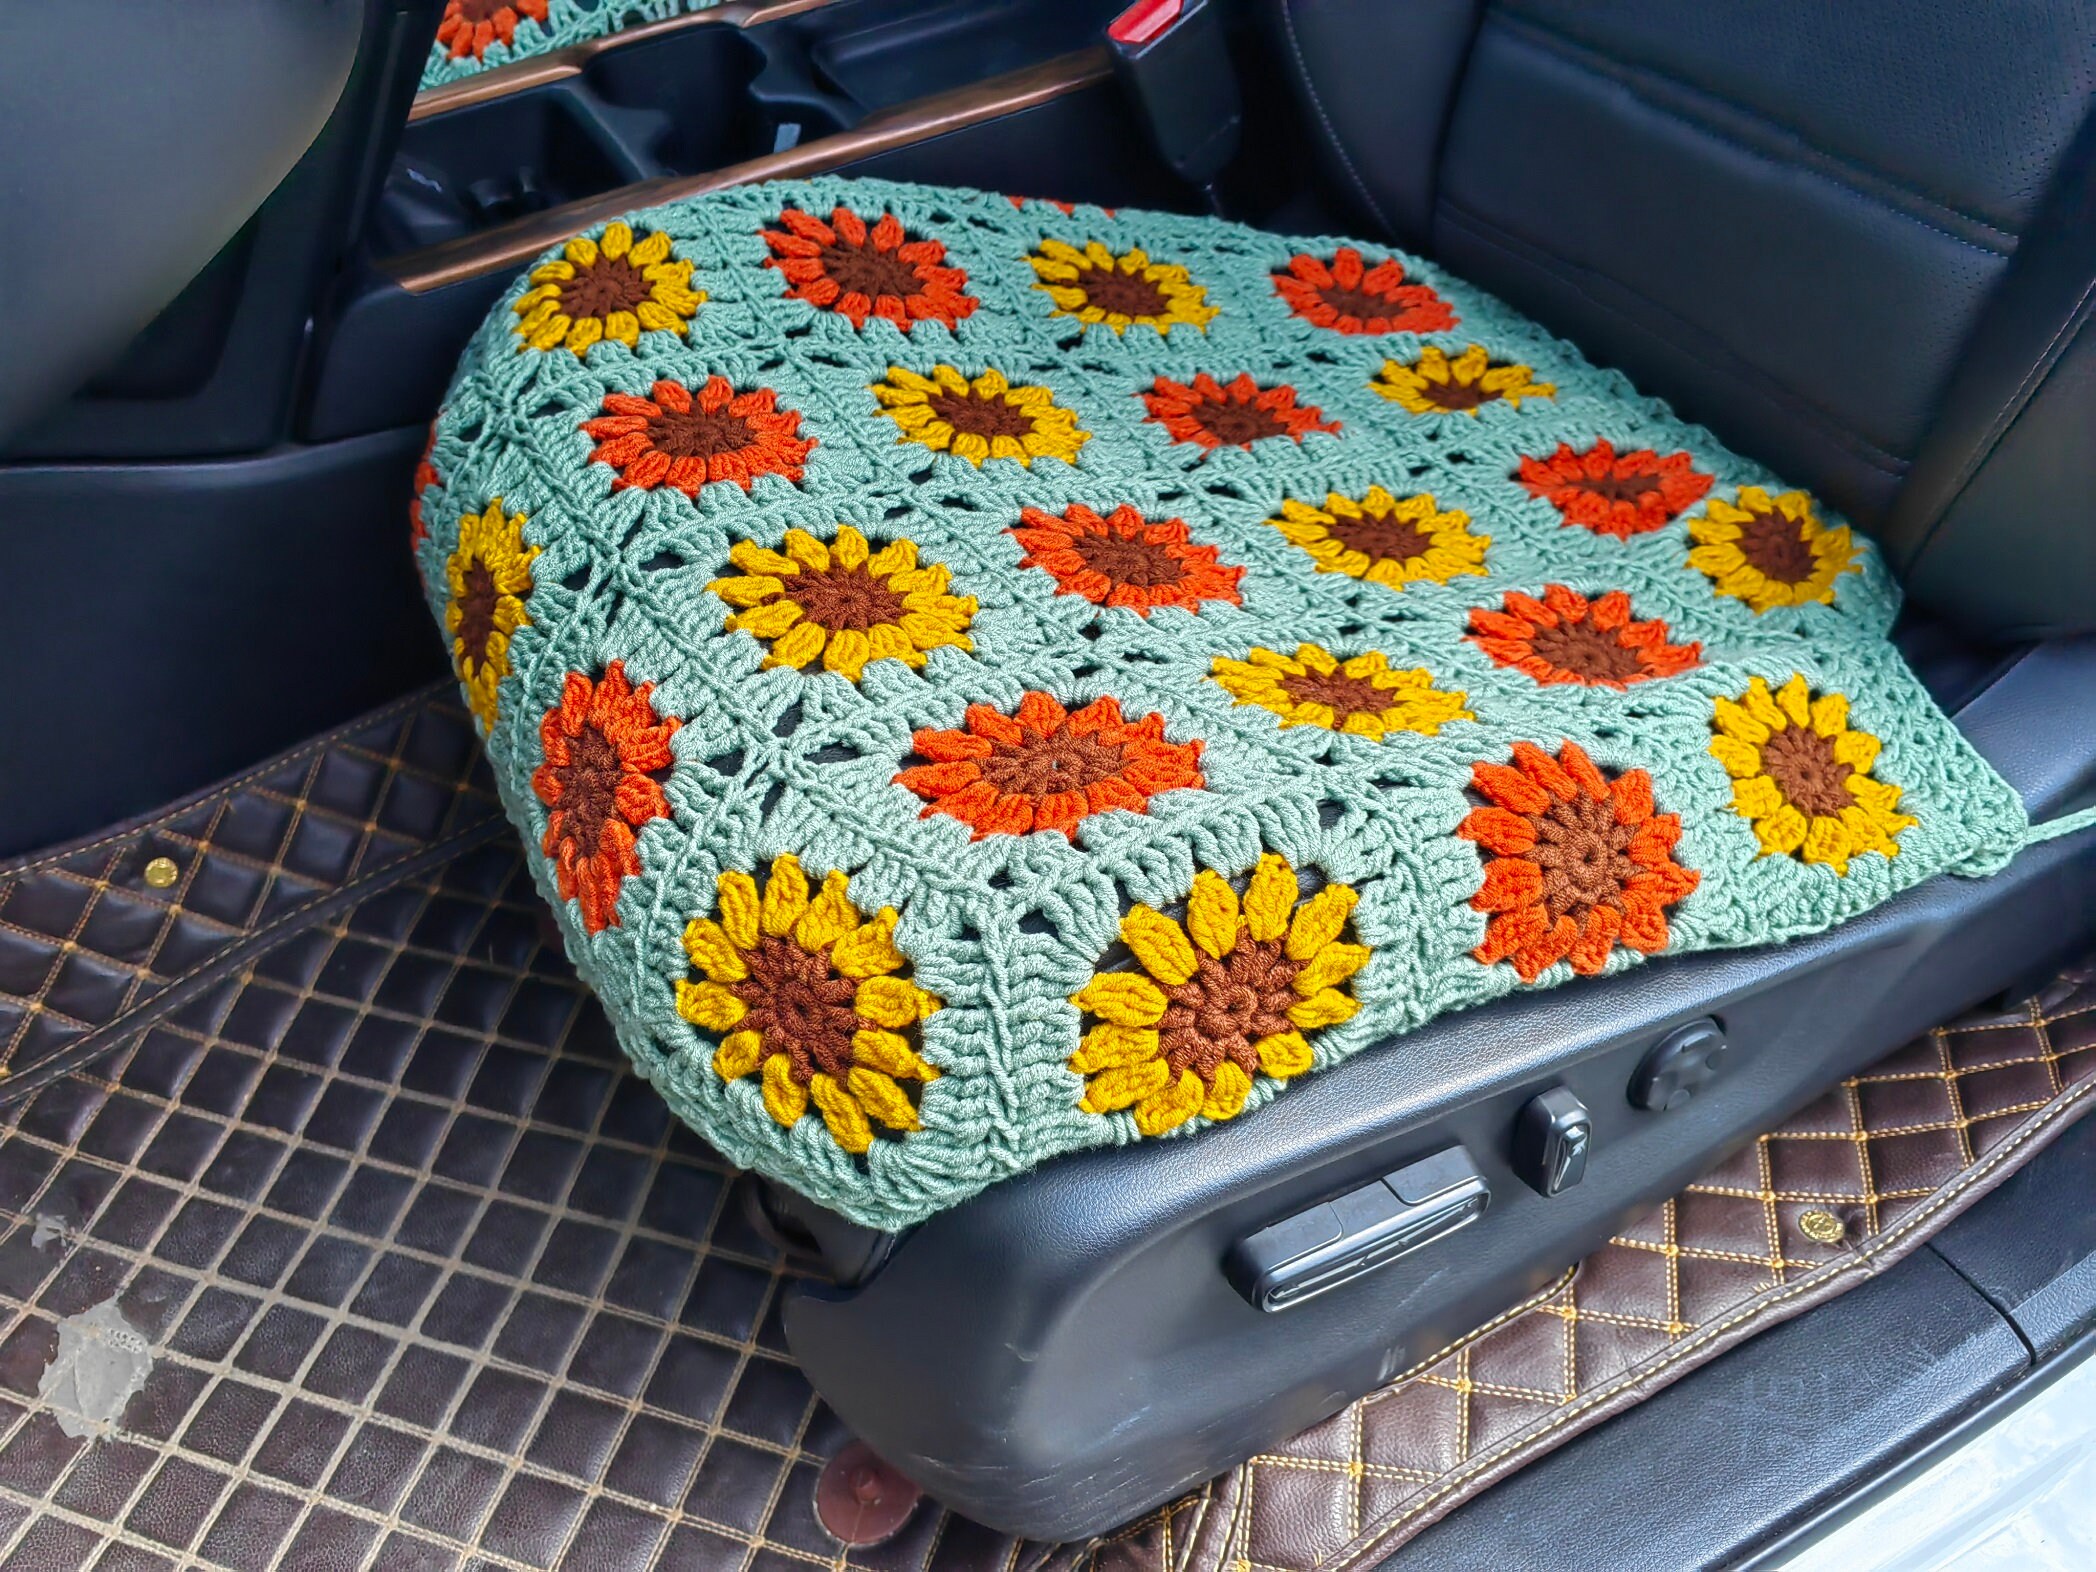 Autositzbezüge, handgemachte häkeln Sonnenblume Sitzbezüge